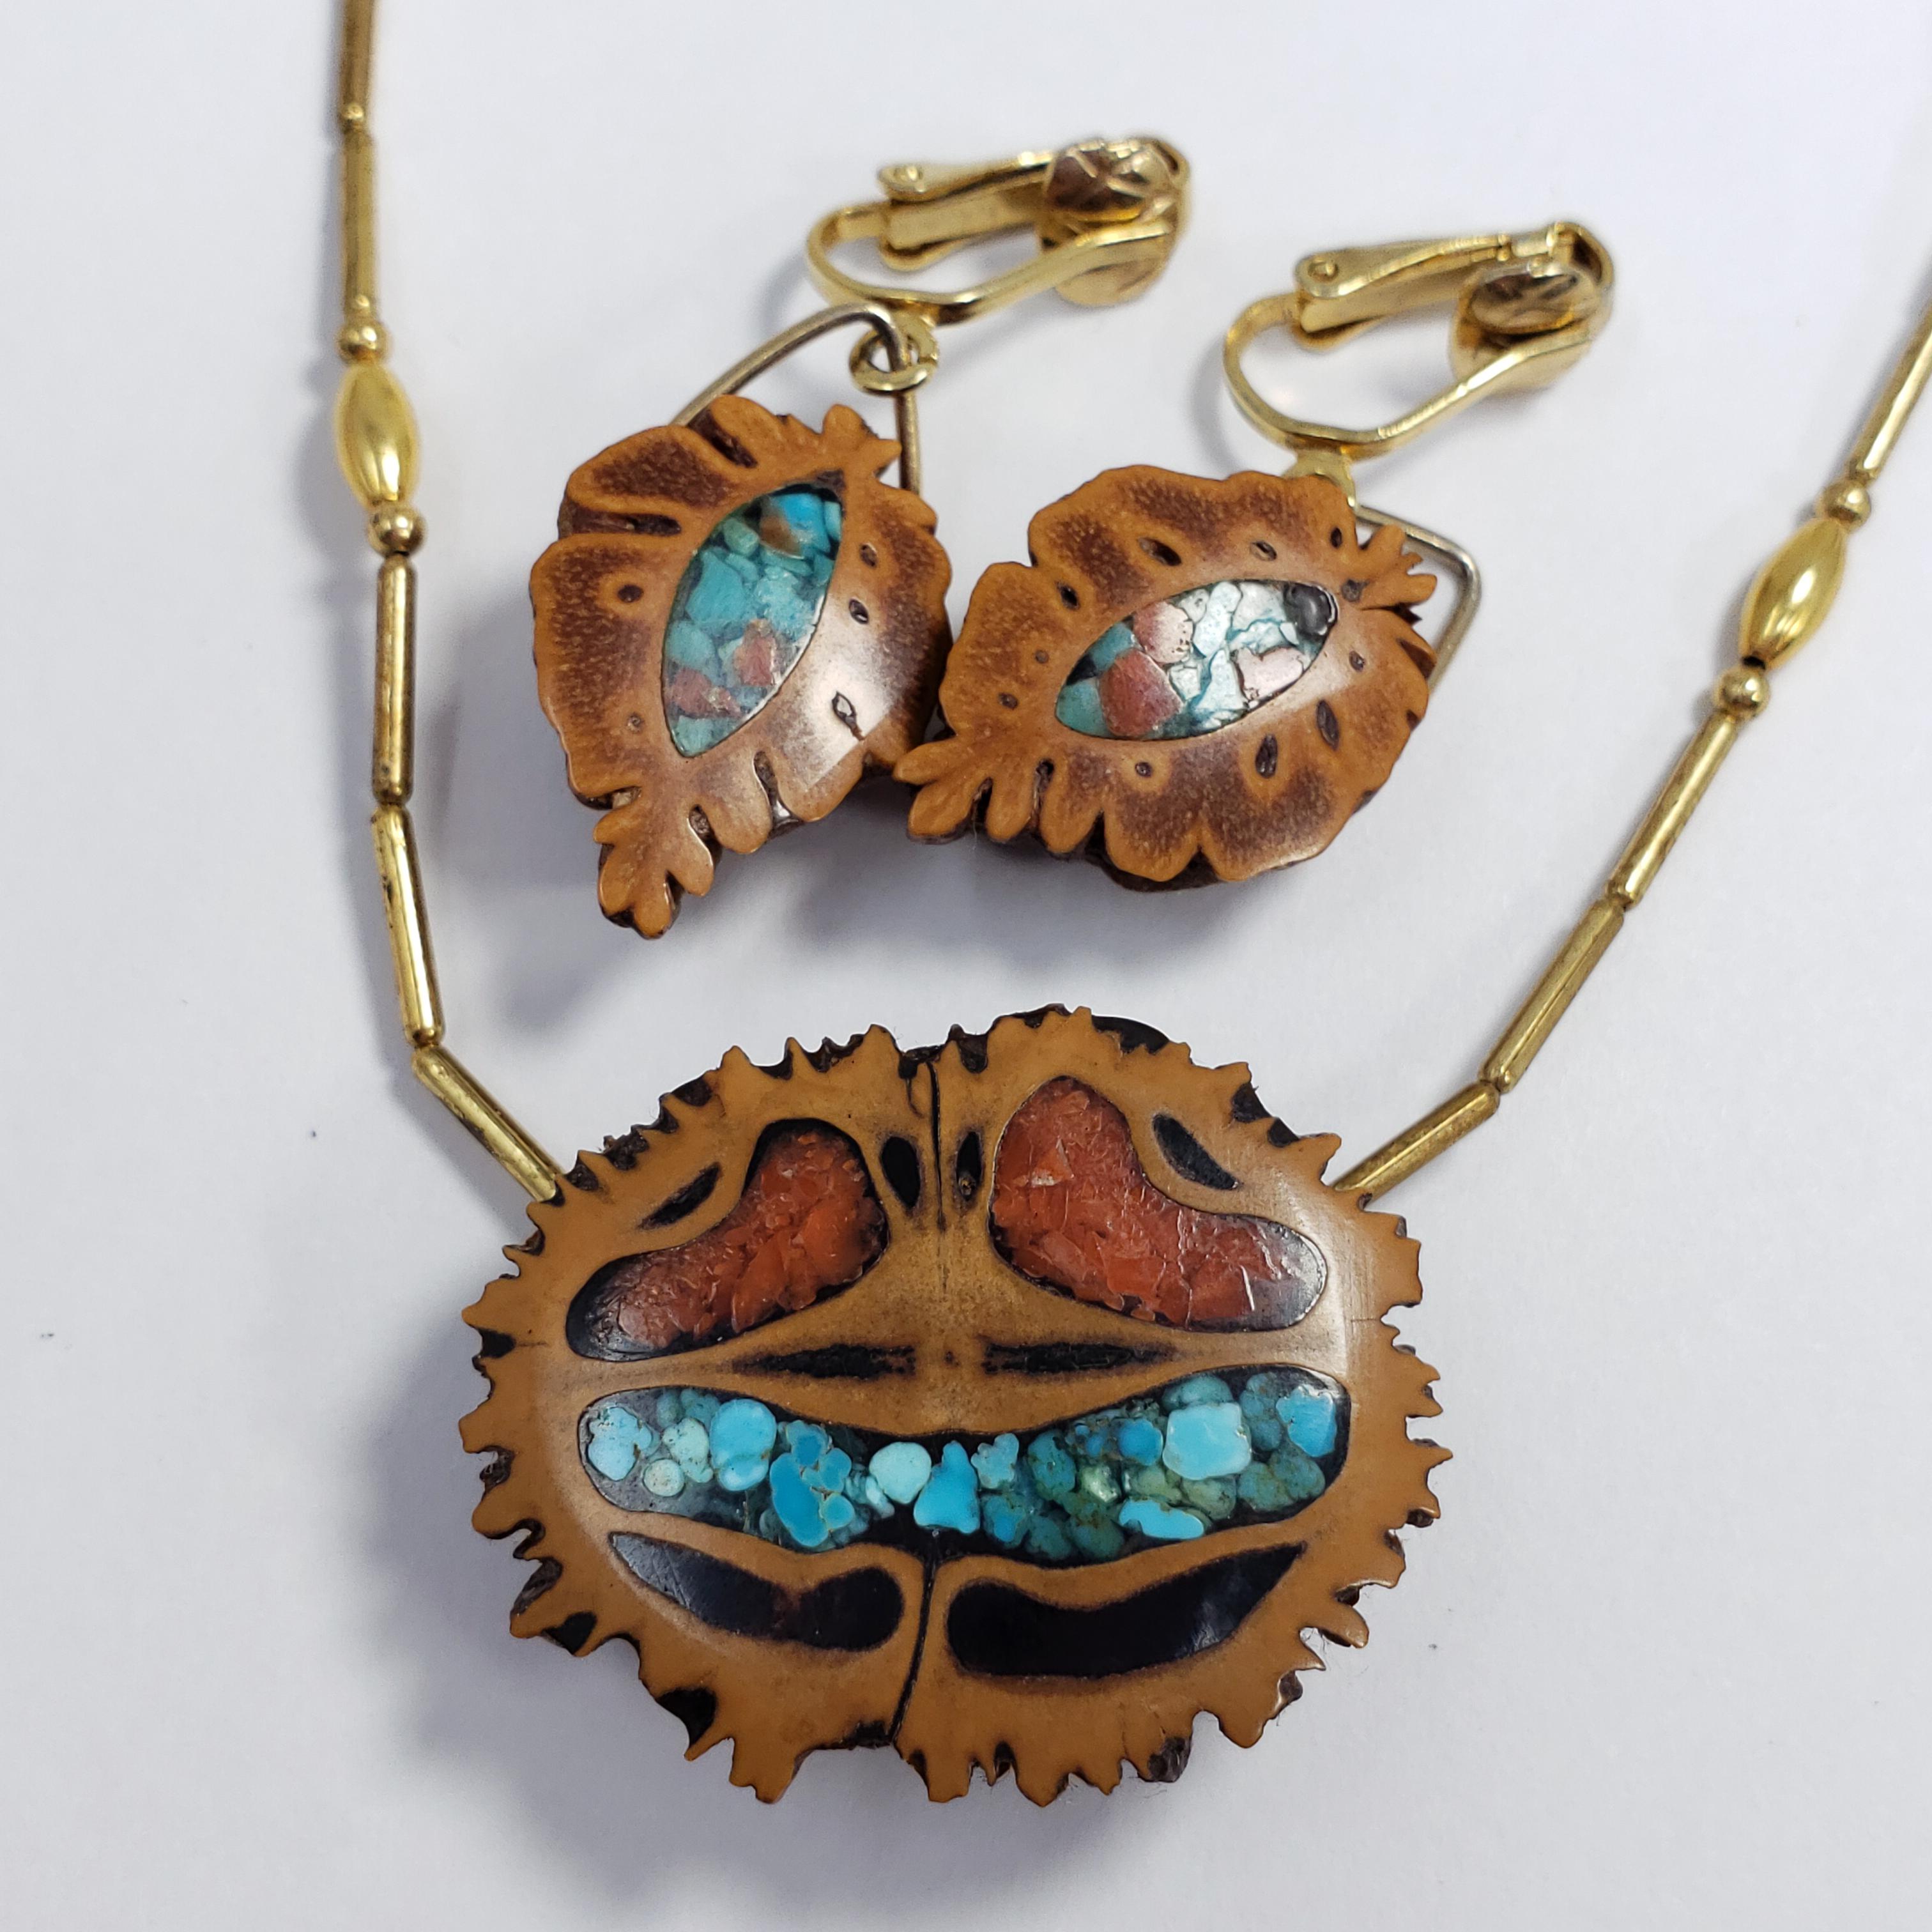 Eine Halskette mit Anhänger und ein Paar Ohrringe in einem stilvollen Design. Die Halskette besteht aus einem Anhänger aus Walnussholz, der mit Korallen und türkisfarbenen Akzenten verziert ist, und einer goldfarbenen Stabkette. Die Clip-Ohrringe